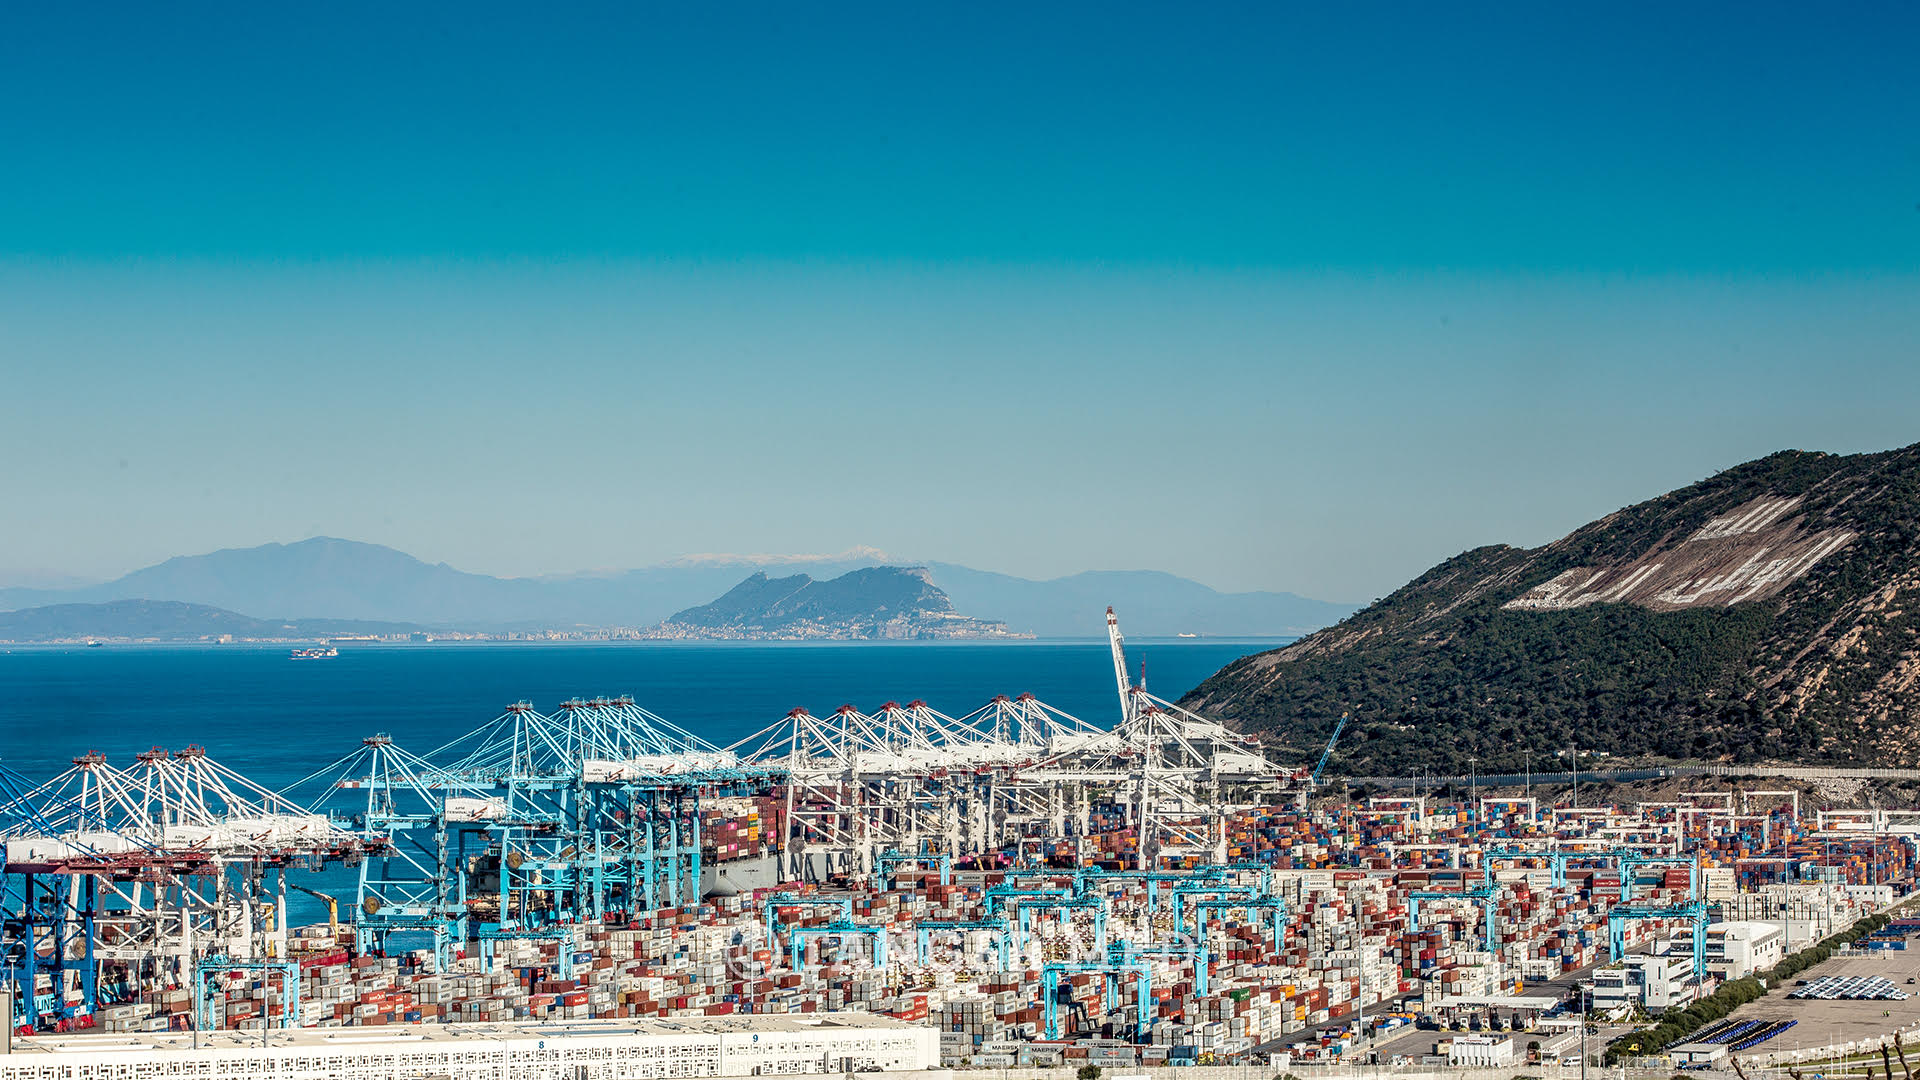 Tanger Med désormais premier port à conteneurs en Méditerranée